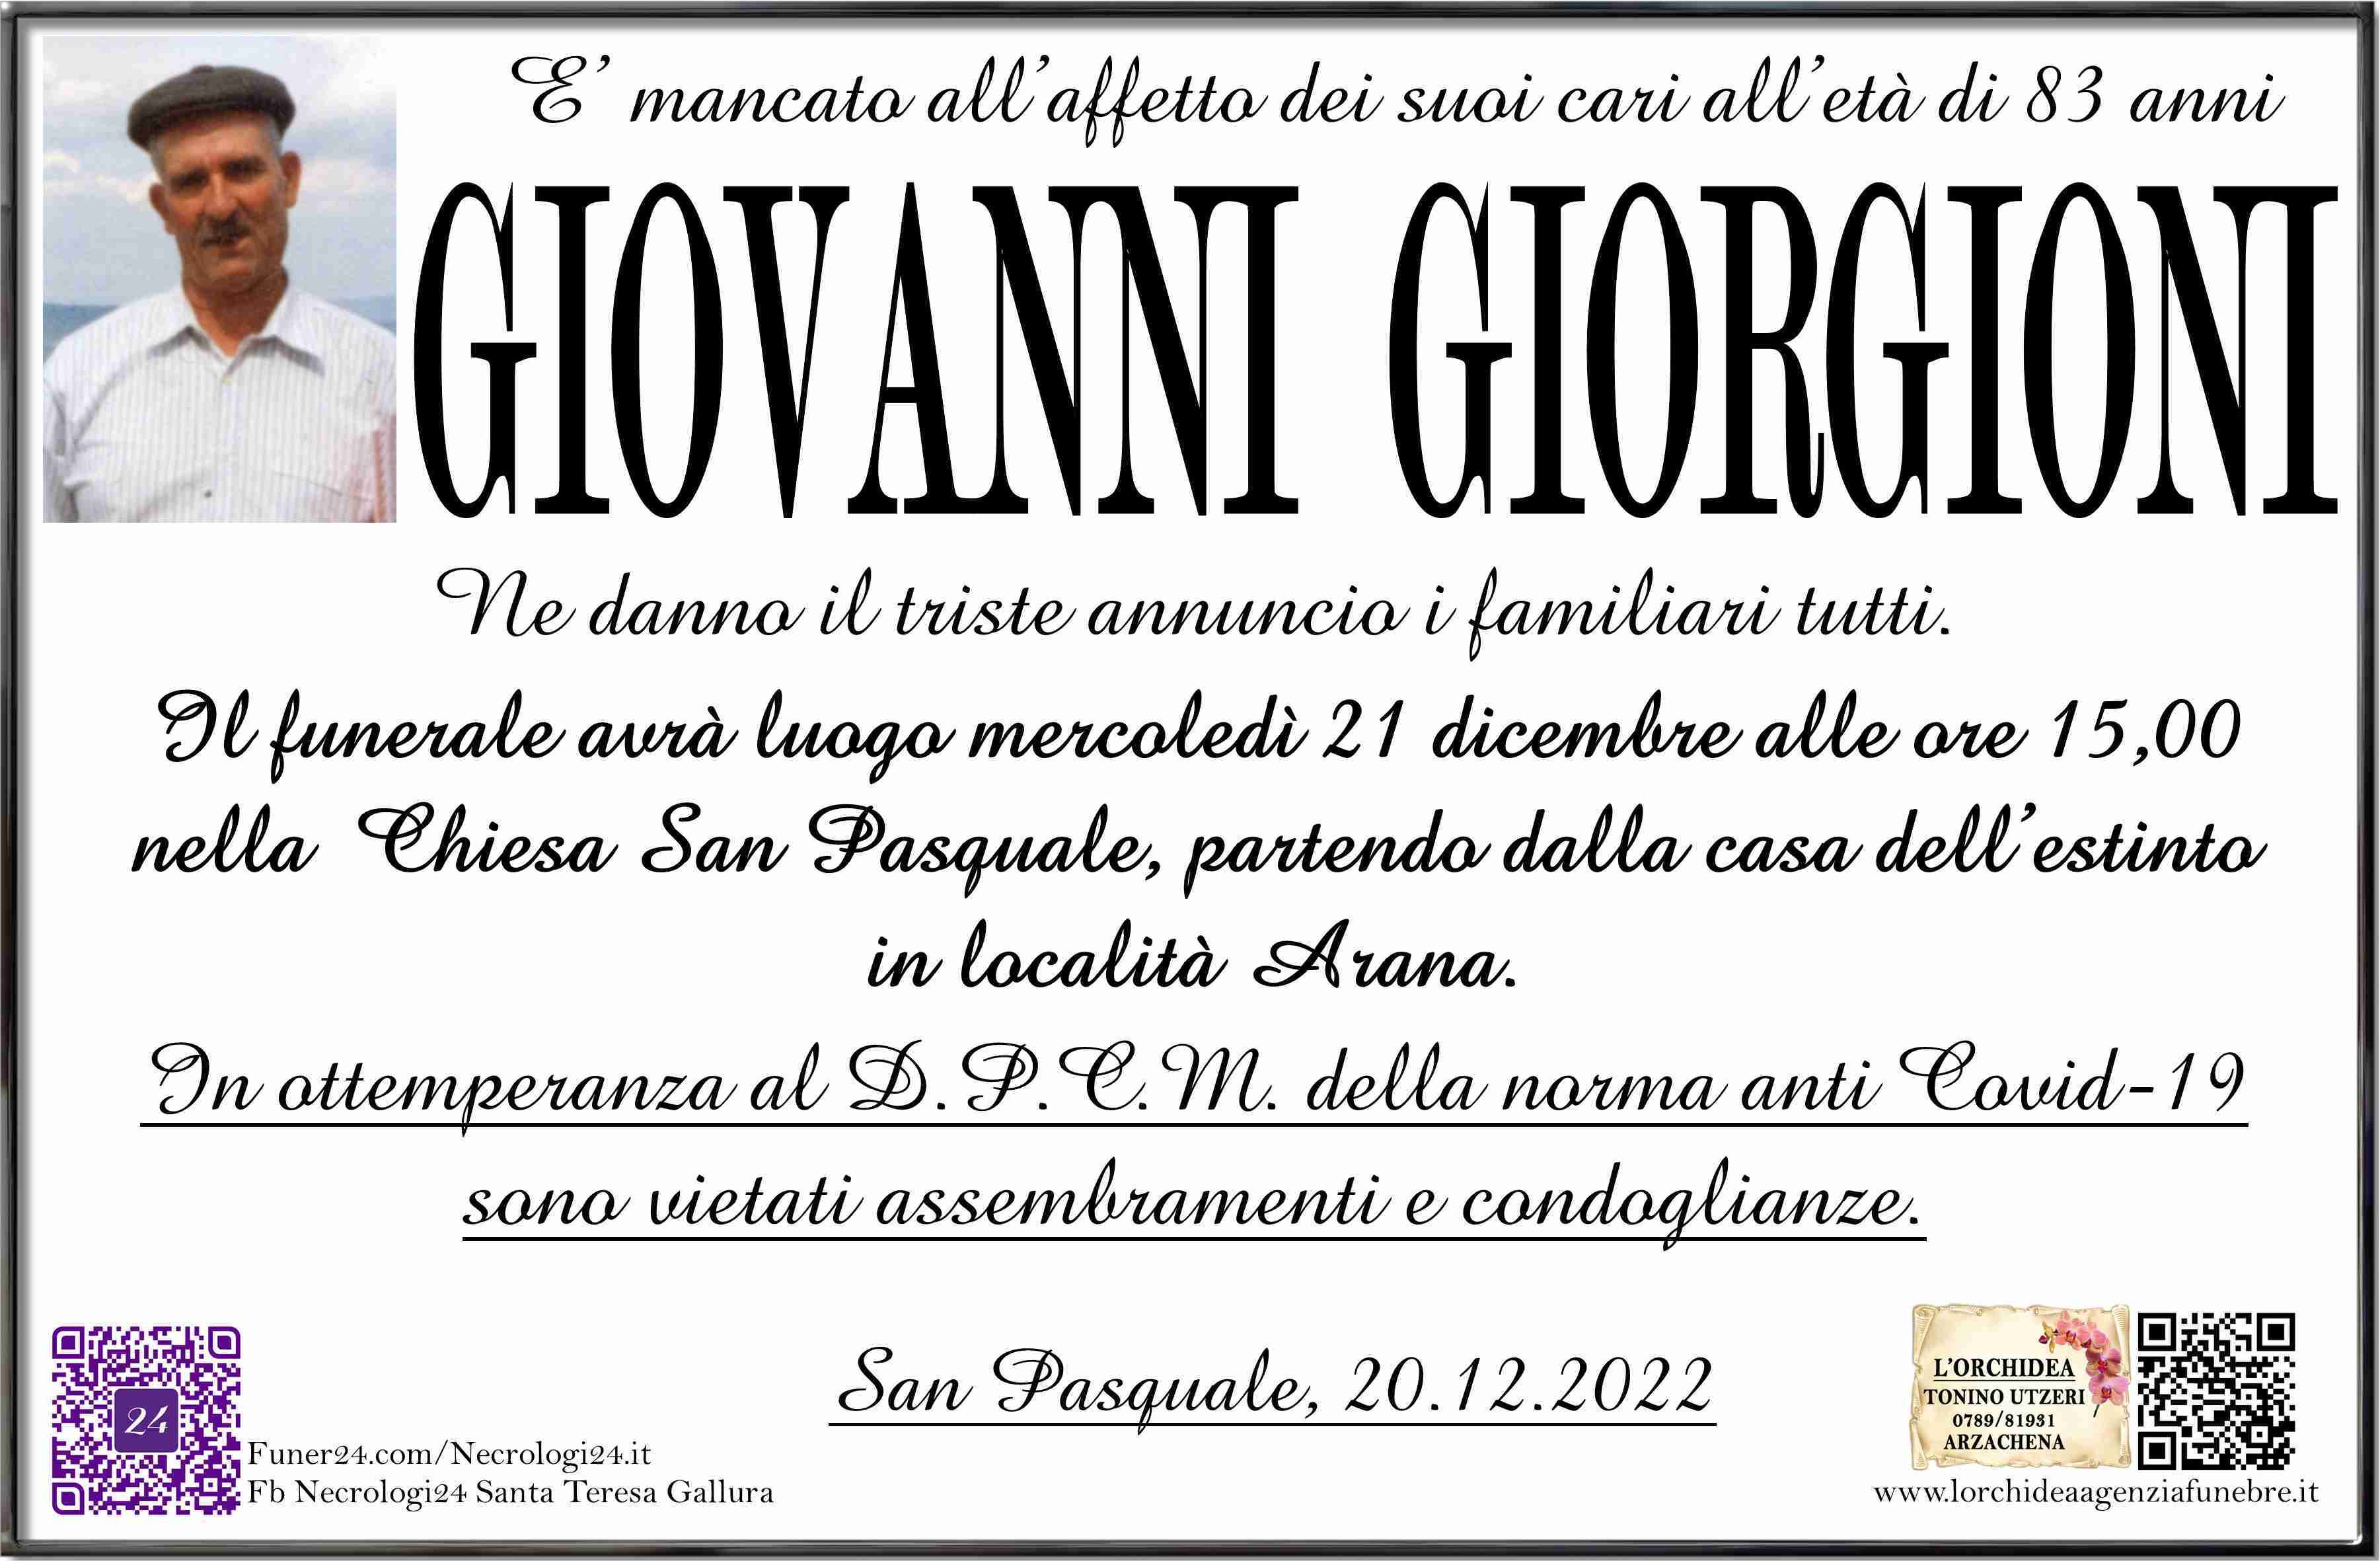 Giovanni Giorgioni